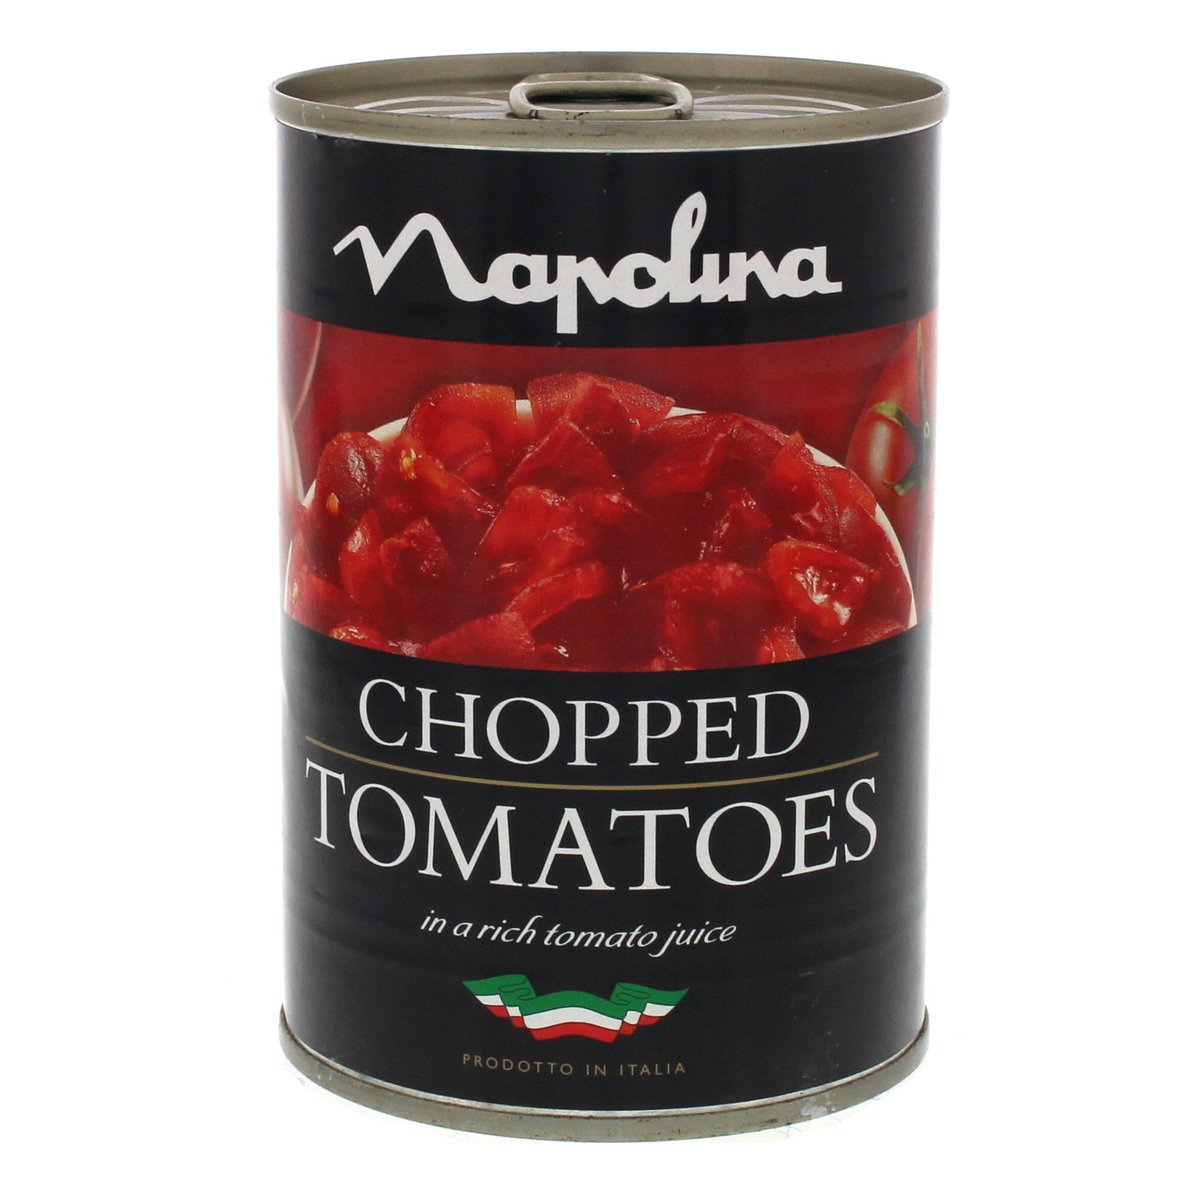 نابولينا طماطم مقطعة في عصير طماطم ٤٠٠ جم